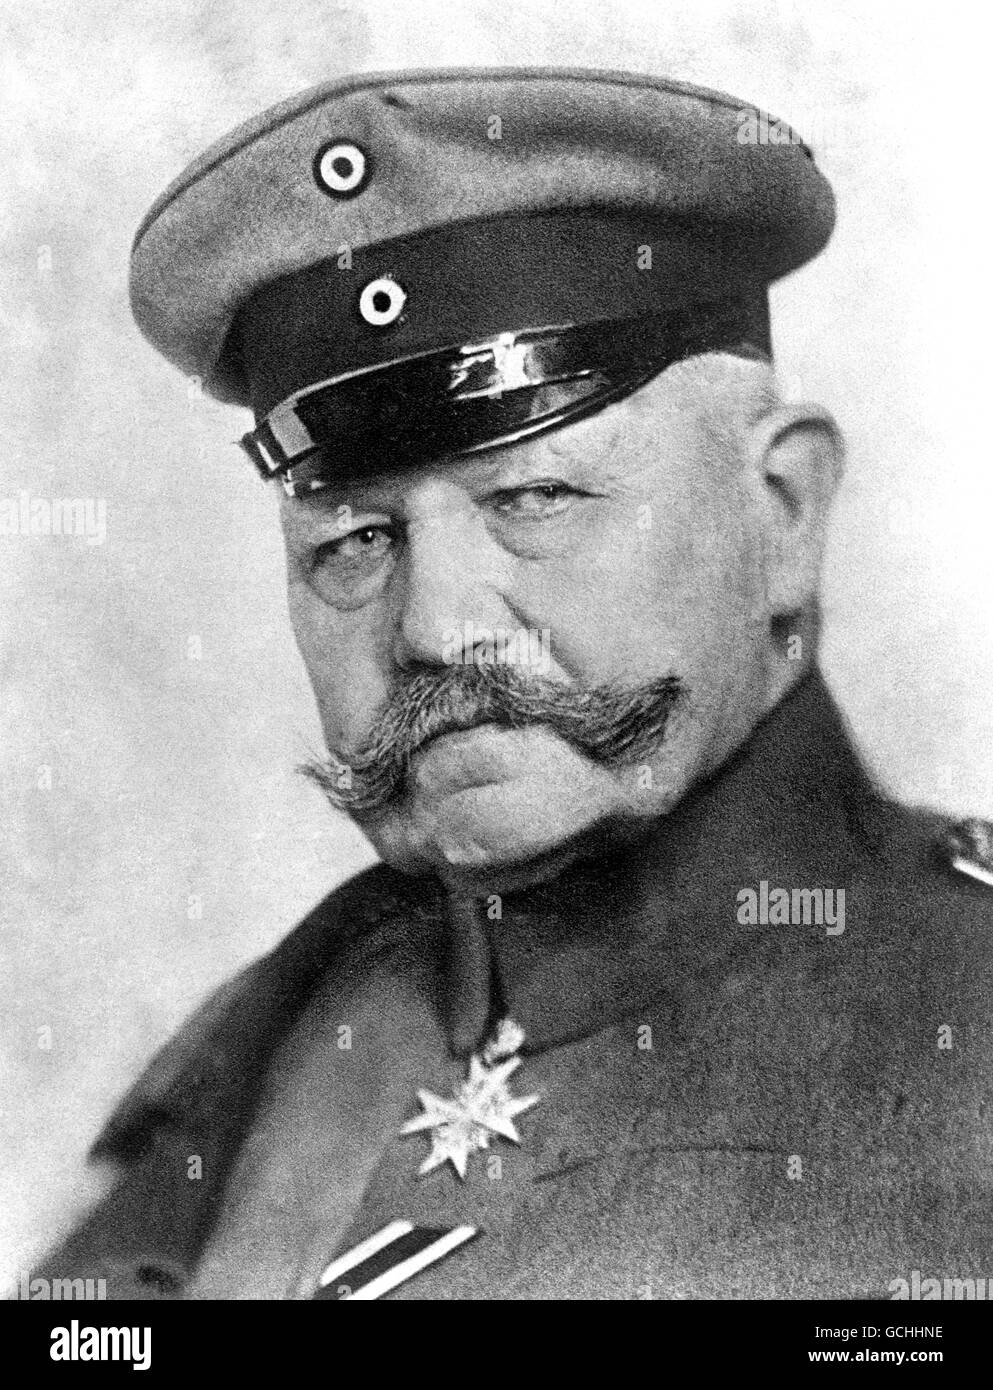 World War One - GENERAL PAUL VON HINDENBURG 1917 Stock Photo